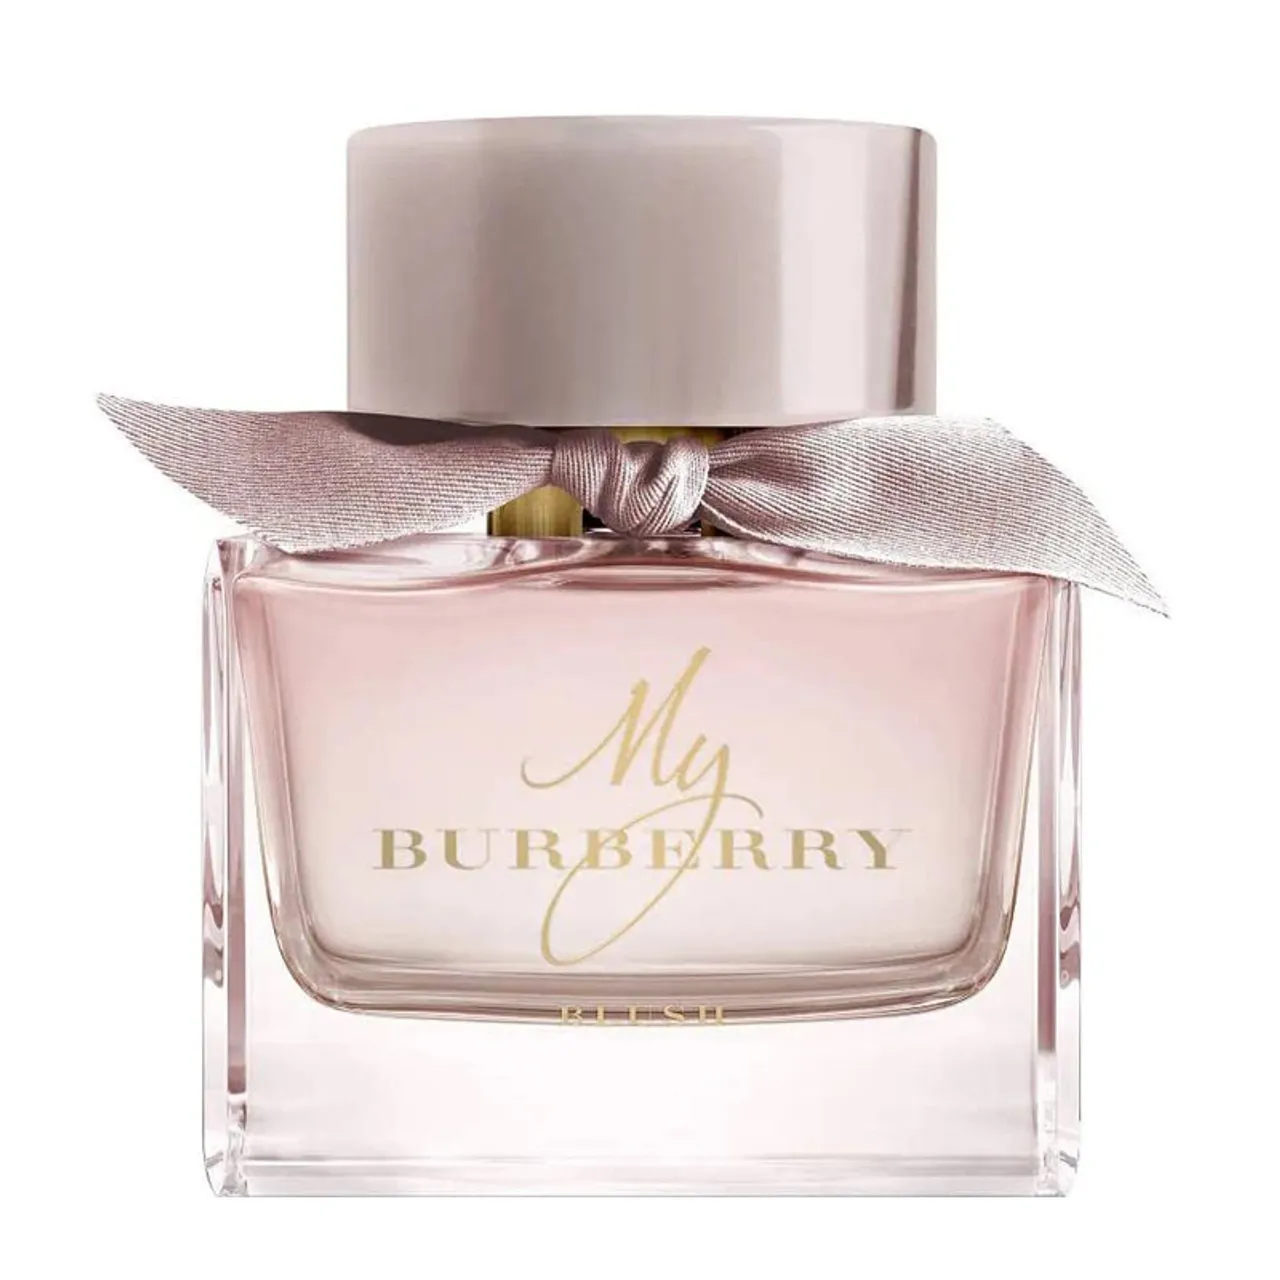 Burberry My Burberry Blush Eau de Parfum 90ml Spray